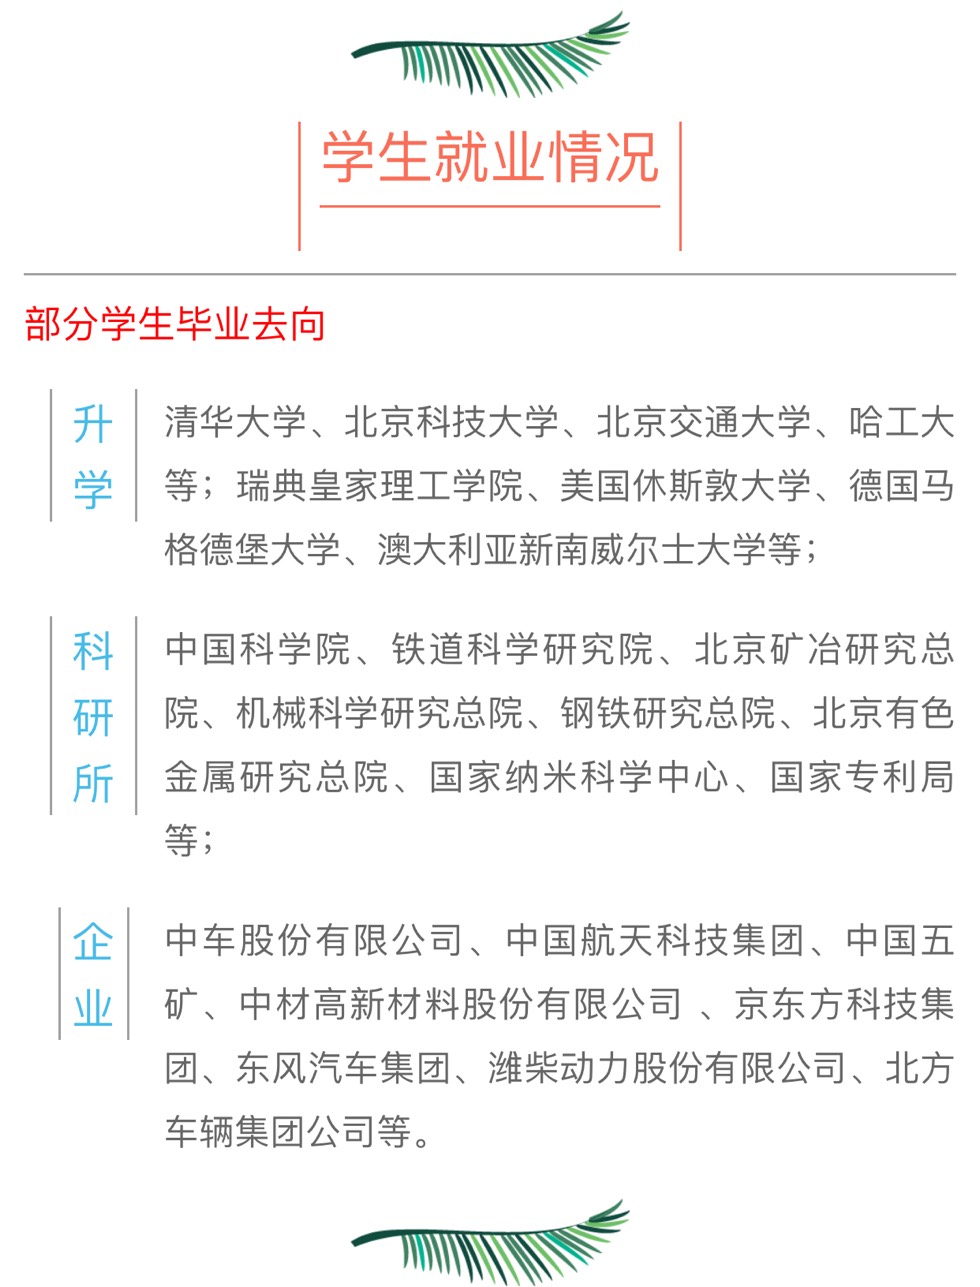 交大招聘_招募令 上海交通大学学生科学技术协会招新(3)